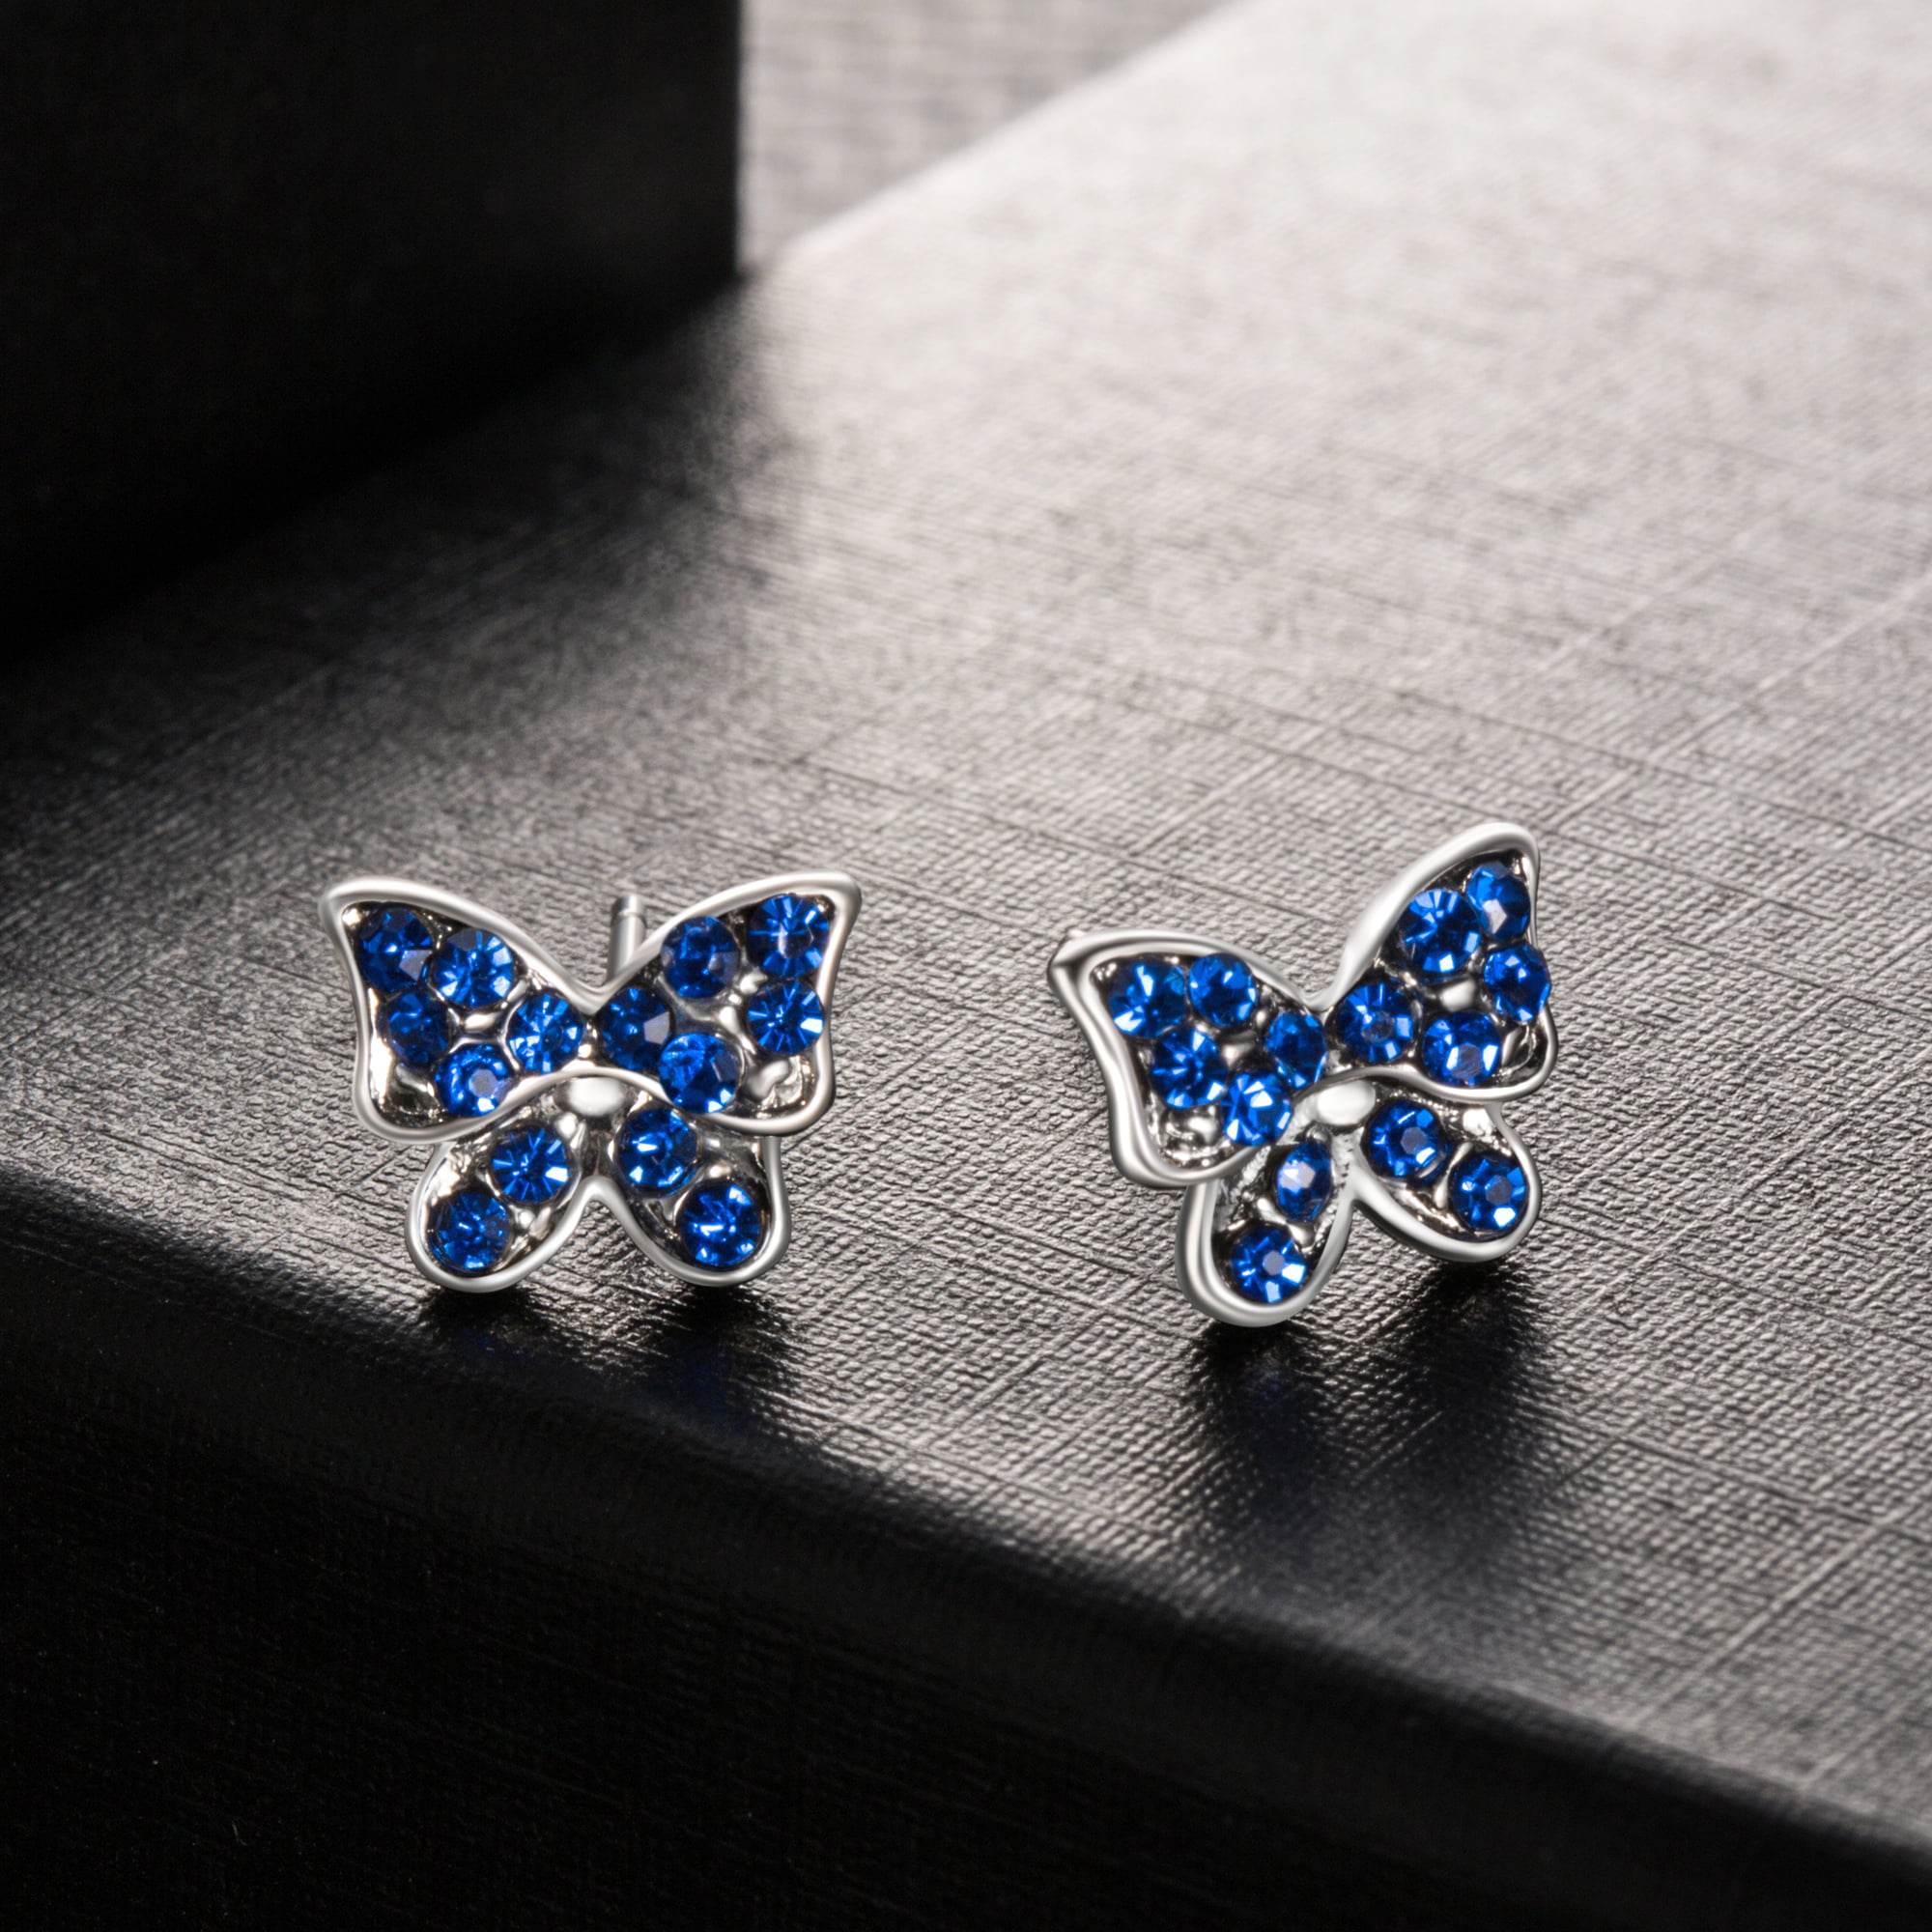 Butterfly sapphire earring studs-Small stacks earrings-Dainty multiple  piercing - Shop Majade Jewelry Design Earrings & Clip-ons - Pinkoi